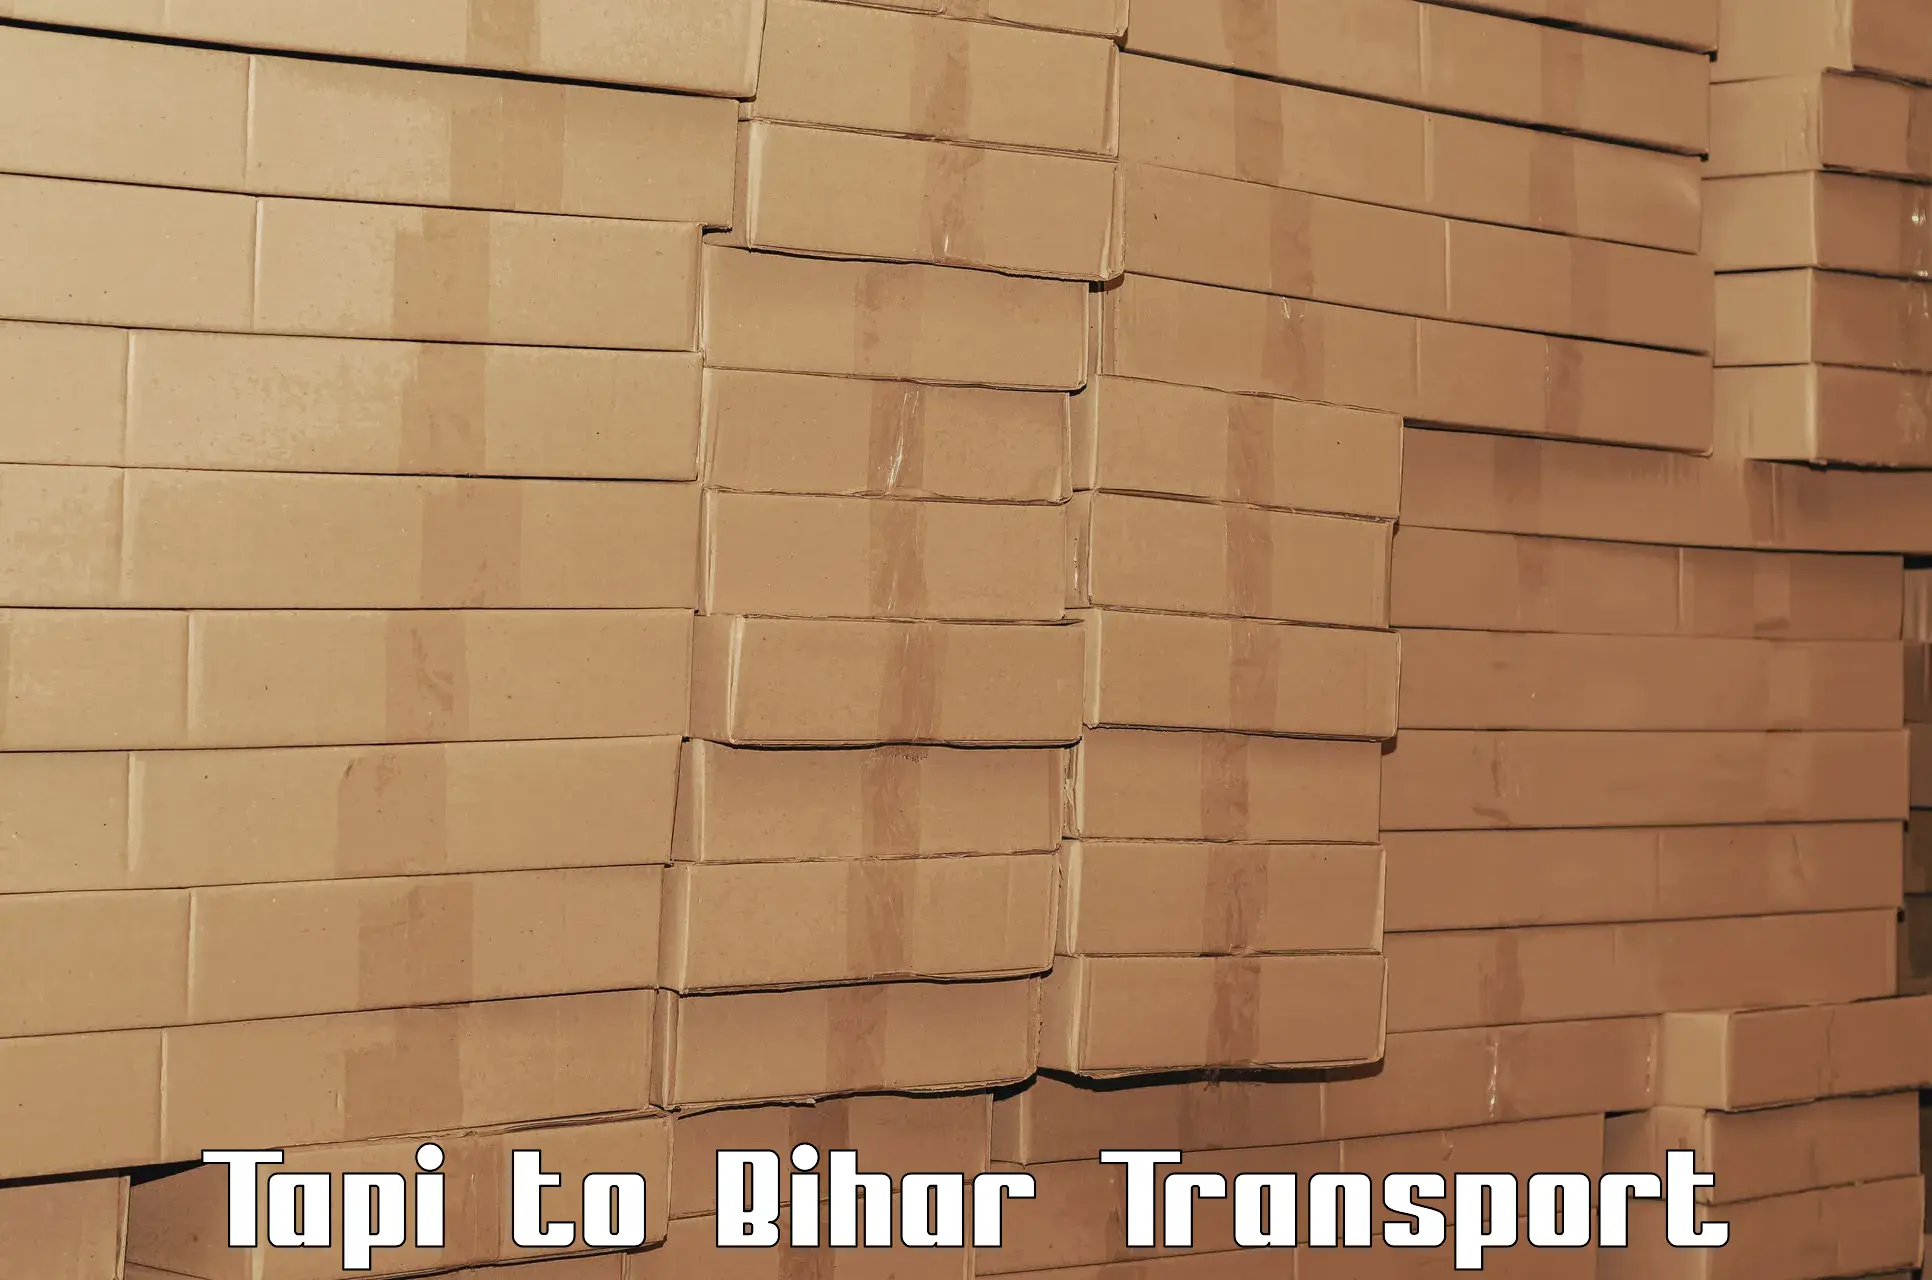 Online transport booking Tapi to Sangrampur